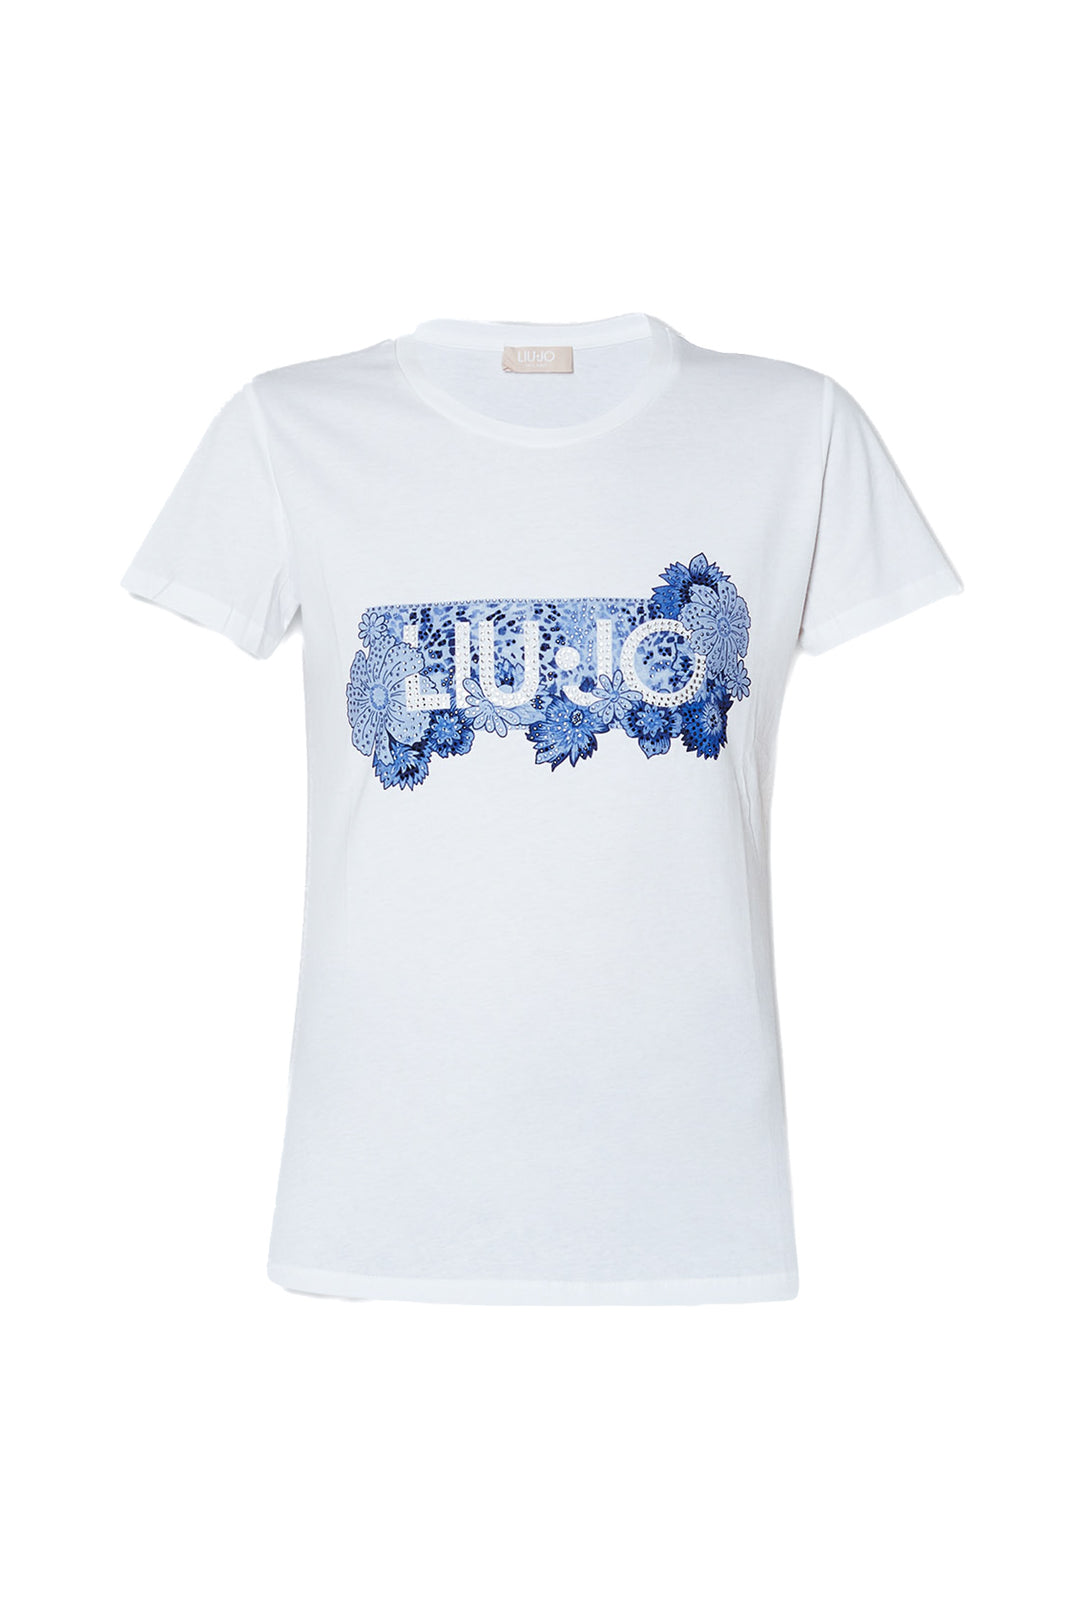 LIU JO T-shirt bianca ecosostenibile in cotone con logo azzurro - Mancinelli 1954